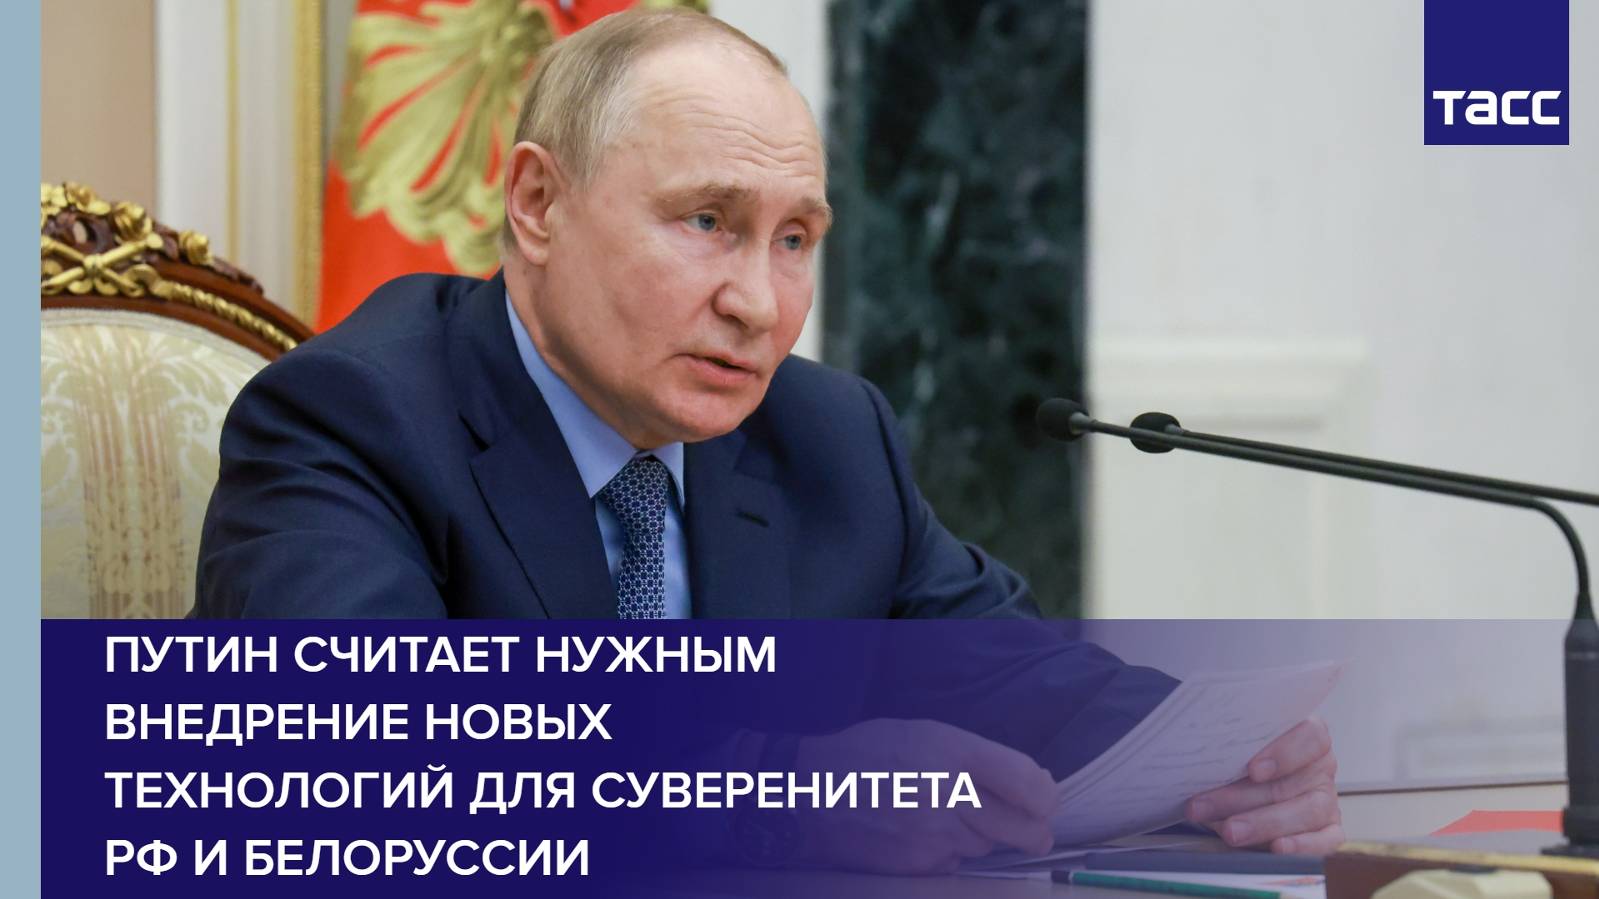 Путин считает нужным внедрение новых технологий для суверенитета РФ и Белоруссии